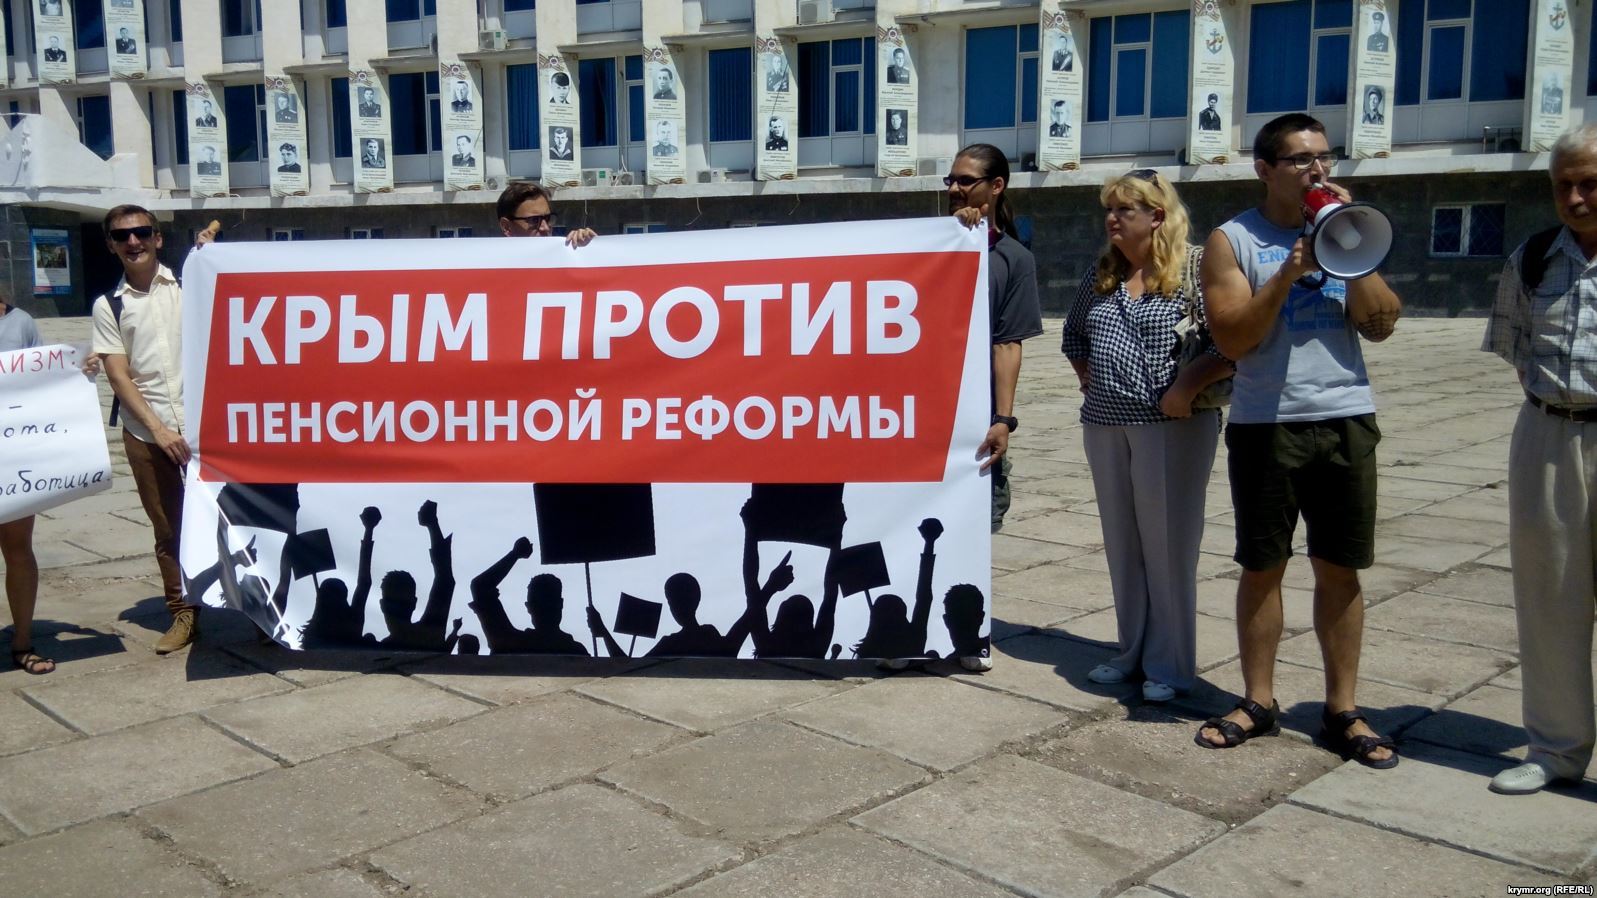 "Россия нас спасла от ба****овцев": в Крыму прошел странный  митинг против Путина и пенсионной реформы - кадры